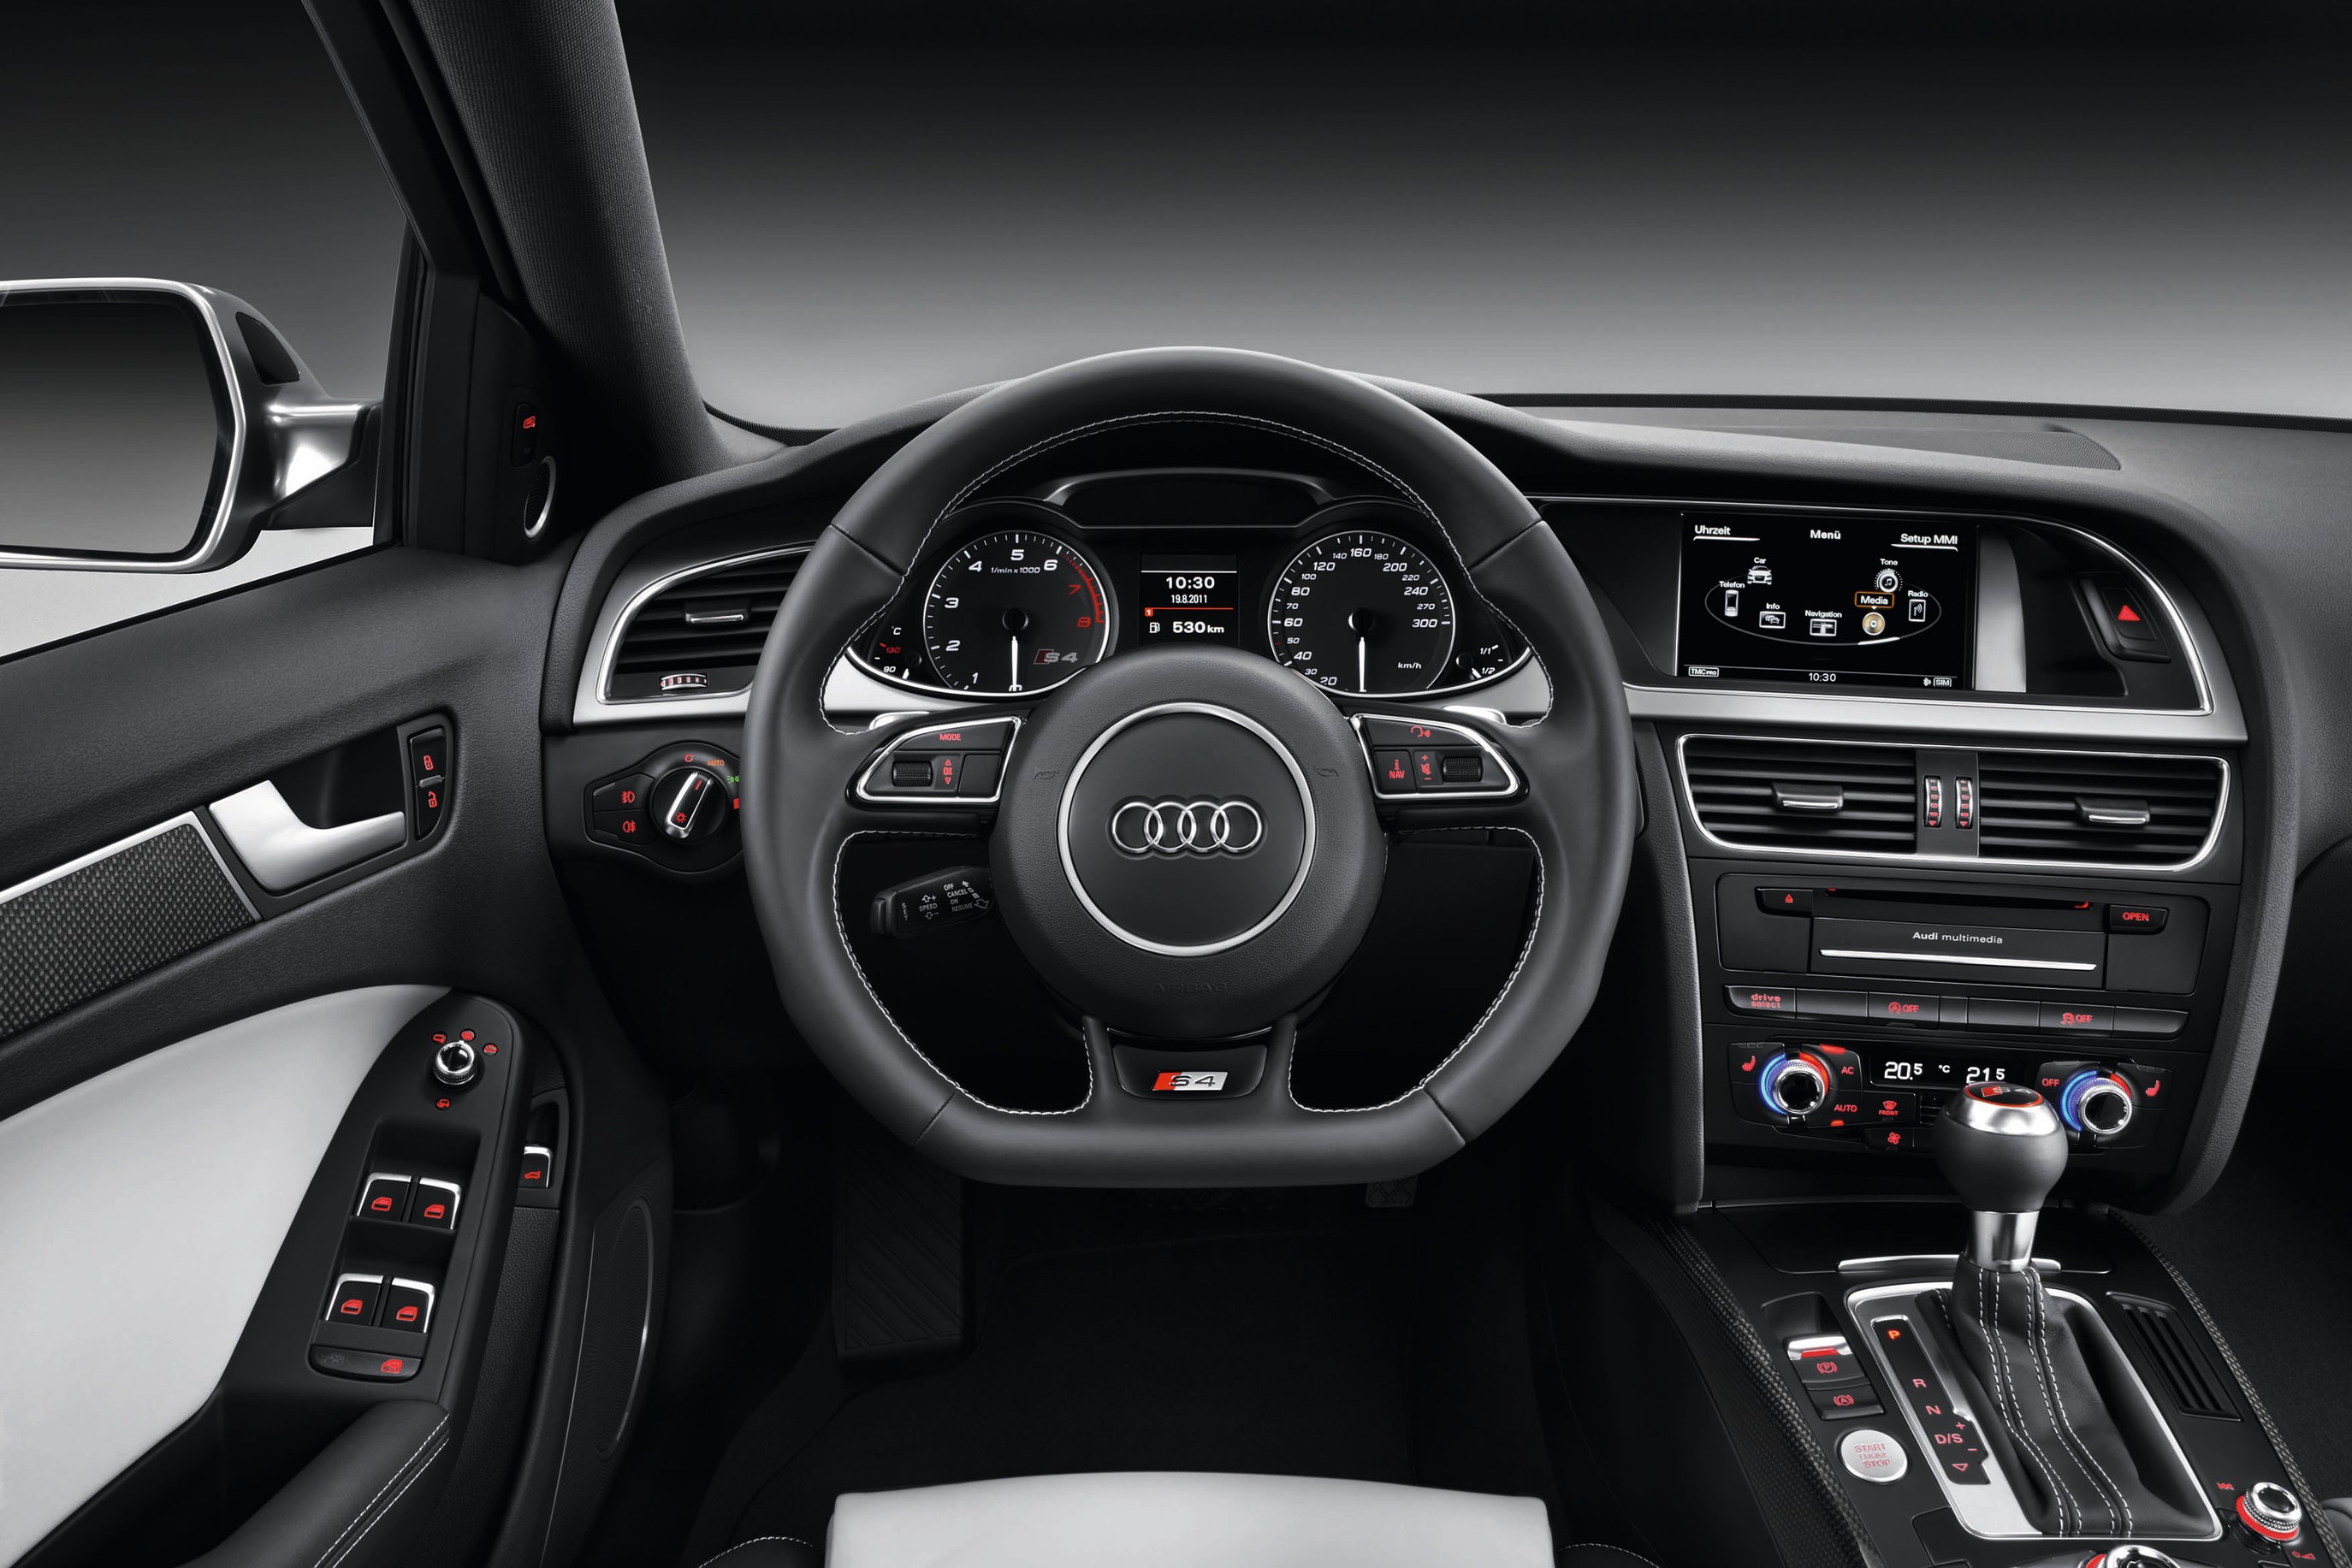 Audi A4 Avant 2012 Wallpaper - 2014 Audi Allroad Interior , HD Wallpaper & Backgrounds